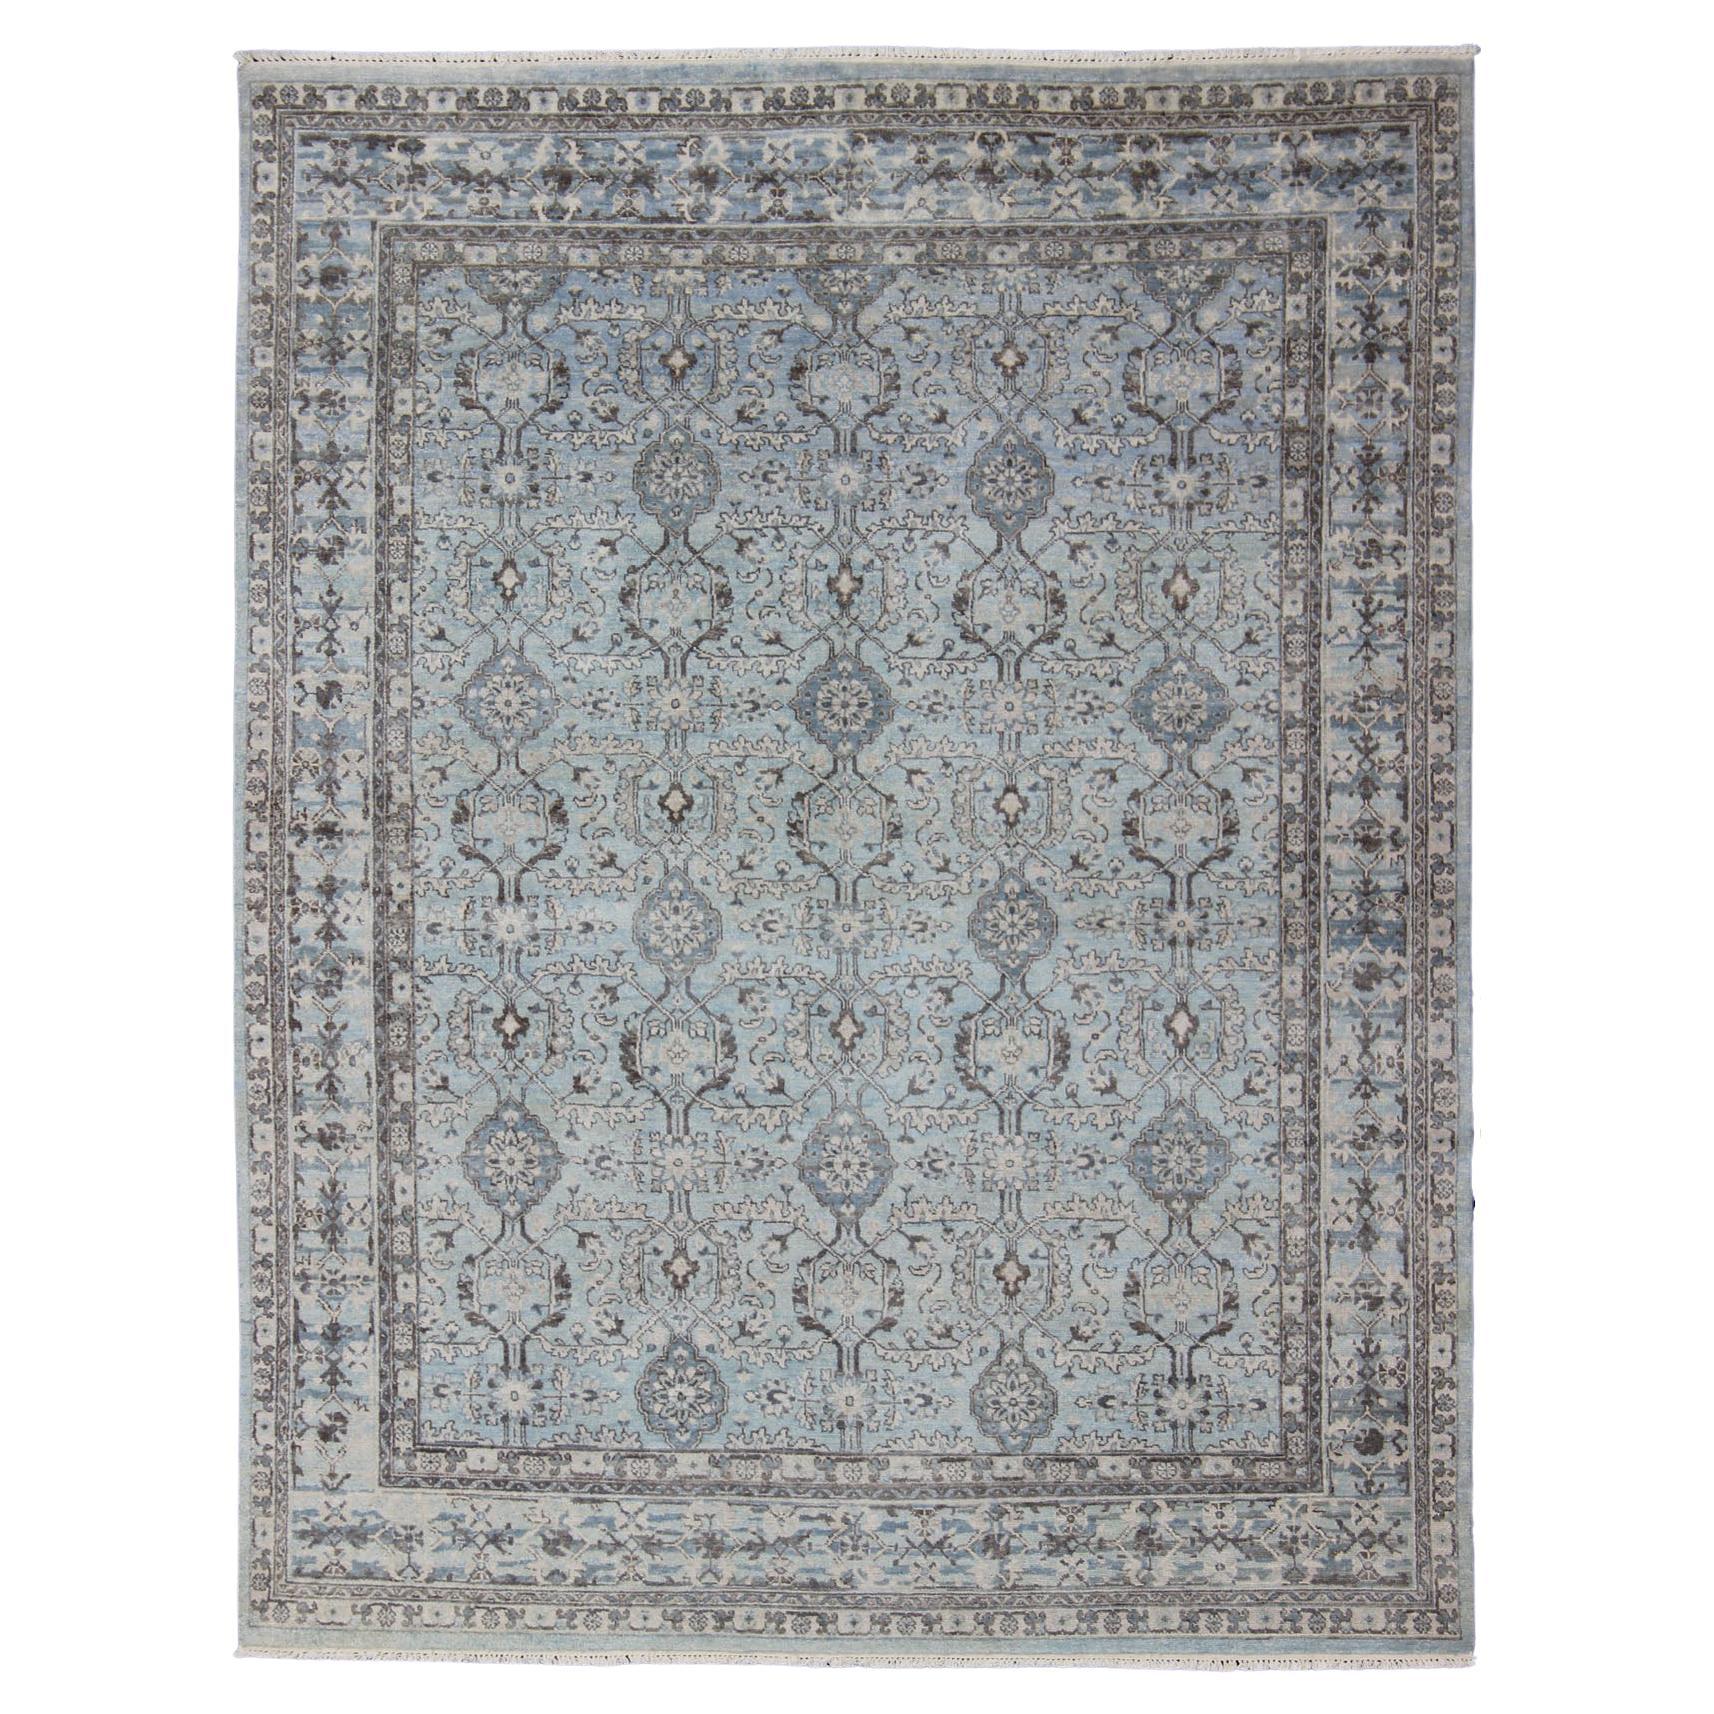 Moderner moderner Oushak-Teppich mit geometrischem Design in hellen Blau- und Brauntönen